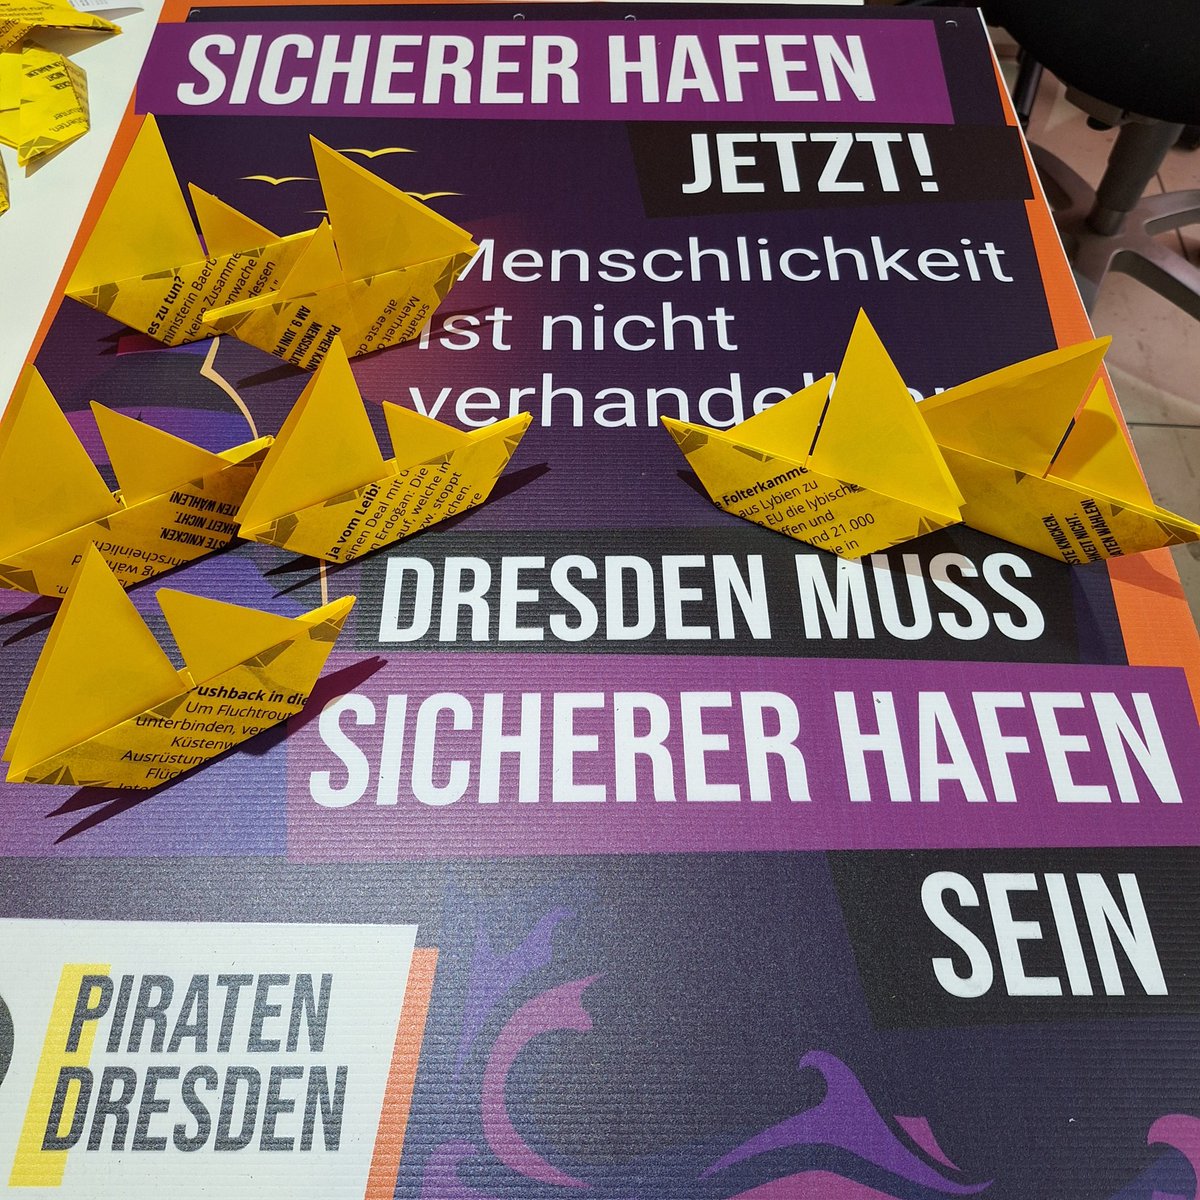 Papier kannste knicken.
Menschlichkeit nicht. 

Morgen, den 22.05., ab 14 Uhr setzen @stillnotlovin, Stephanie Henkel und ich am Albertplatz ein Zeichen für #Asylrecht, #Seenotrettung und #SichererHafen. 

Kommt vorbei! 

#Dresden #StaDDrat #StaDDpol #EUWahl #EUWahl2024 #Piraten